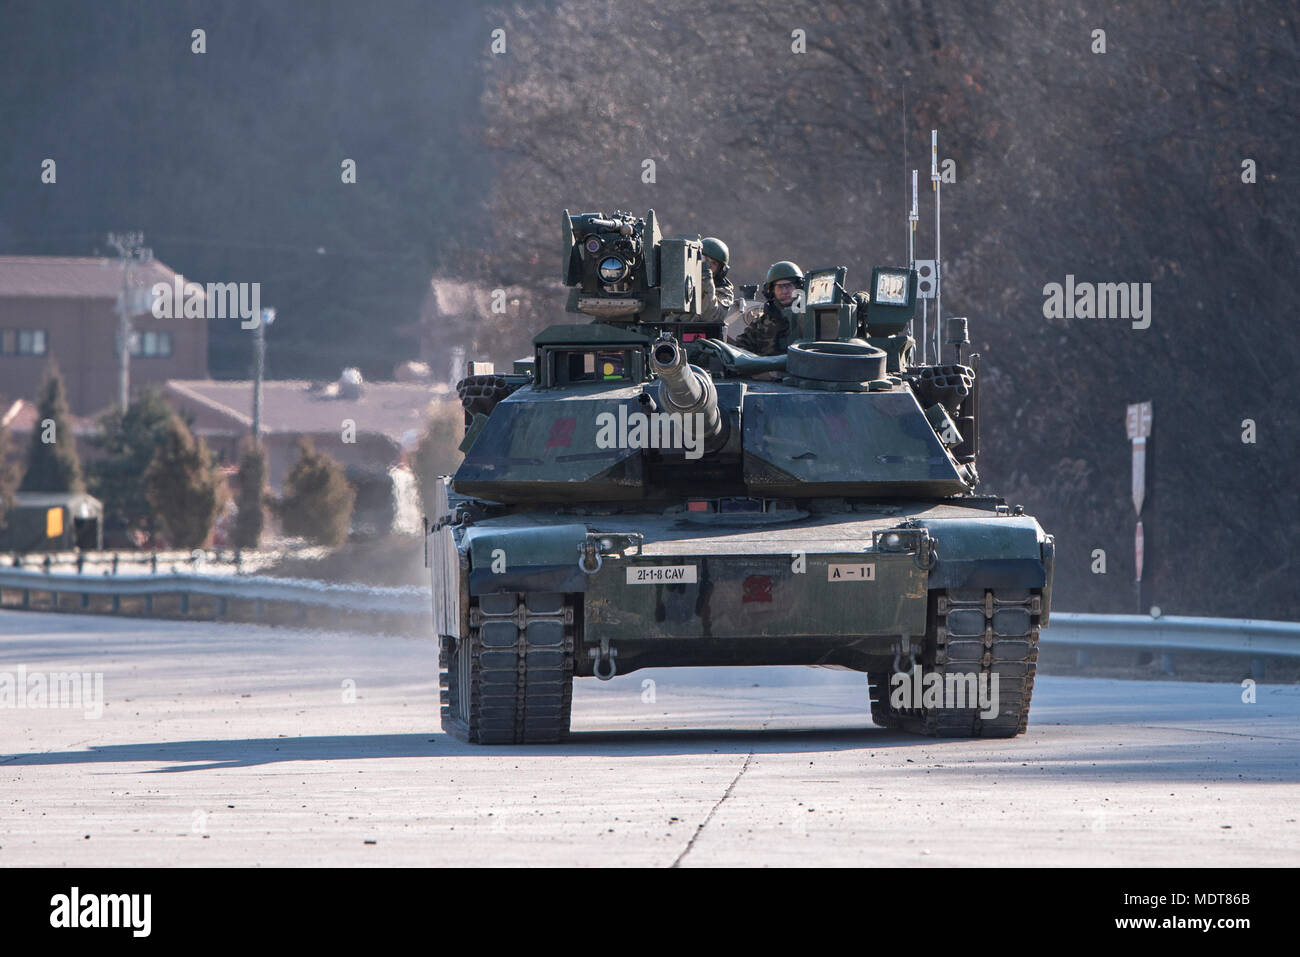 Rodríguez el fuego vivo complejo, República de Corea - un tanque Abrams de "asalto" de la empresa, 1er Batallón, 8º Regimiento de Caballería, 2ª Brigada blindada Equipo de combate, la primera división de caballería se prepara para llevar a cabo la tabla de calificación artillería XII el 5 de diciembre de 2017. 1-8 Cav. ha llevado a cabo capacitación de artillería desde mediados de noviembre en Corea del Sur. Tabla XII reúne varios elementos que incluyen tanques Abrams, vehículos de combate Bradley (BFV), un asalto Vehículo Breacher (ABV) y Apache de apoyo aéreo en un único ejercicio con fuego vivo. Foto de stock